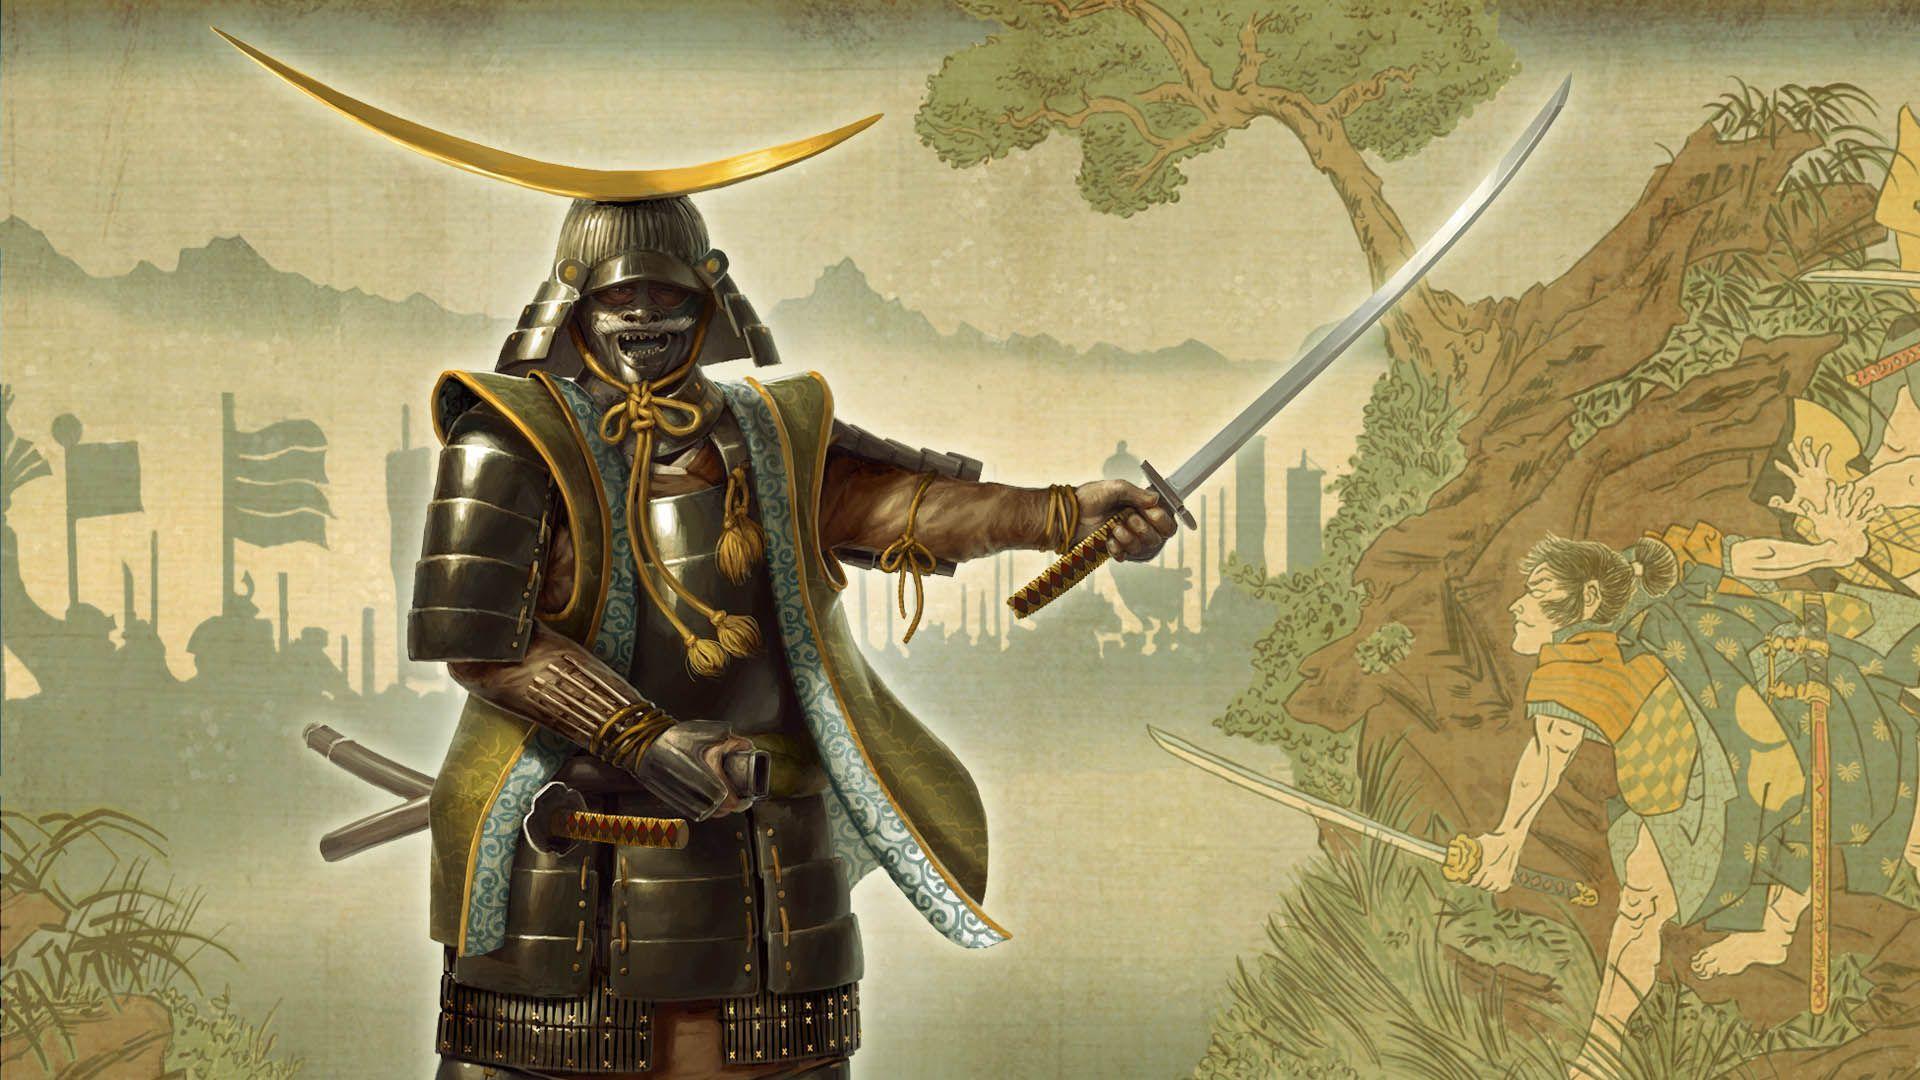 Shogun Wallpapers Top Free Shogun Backgrounds